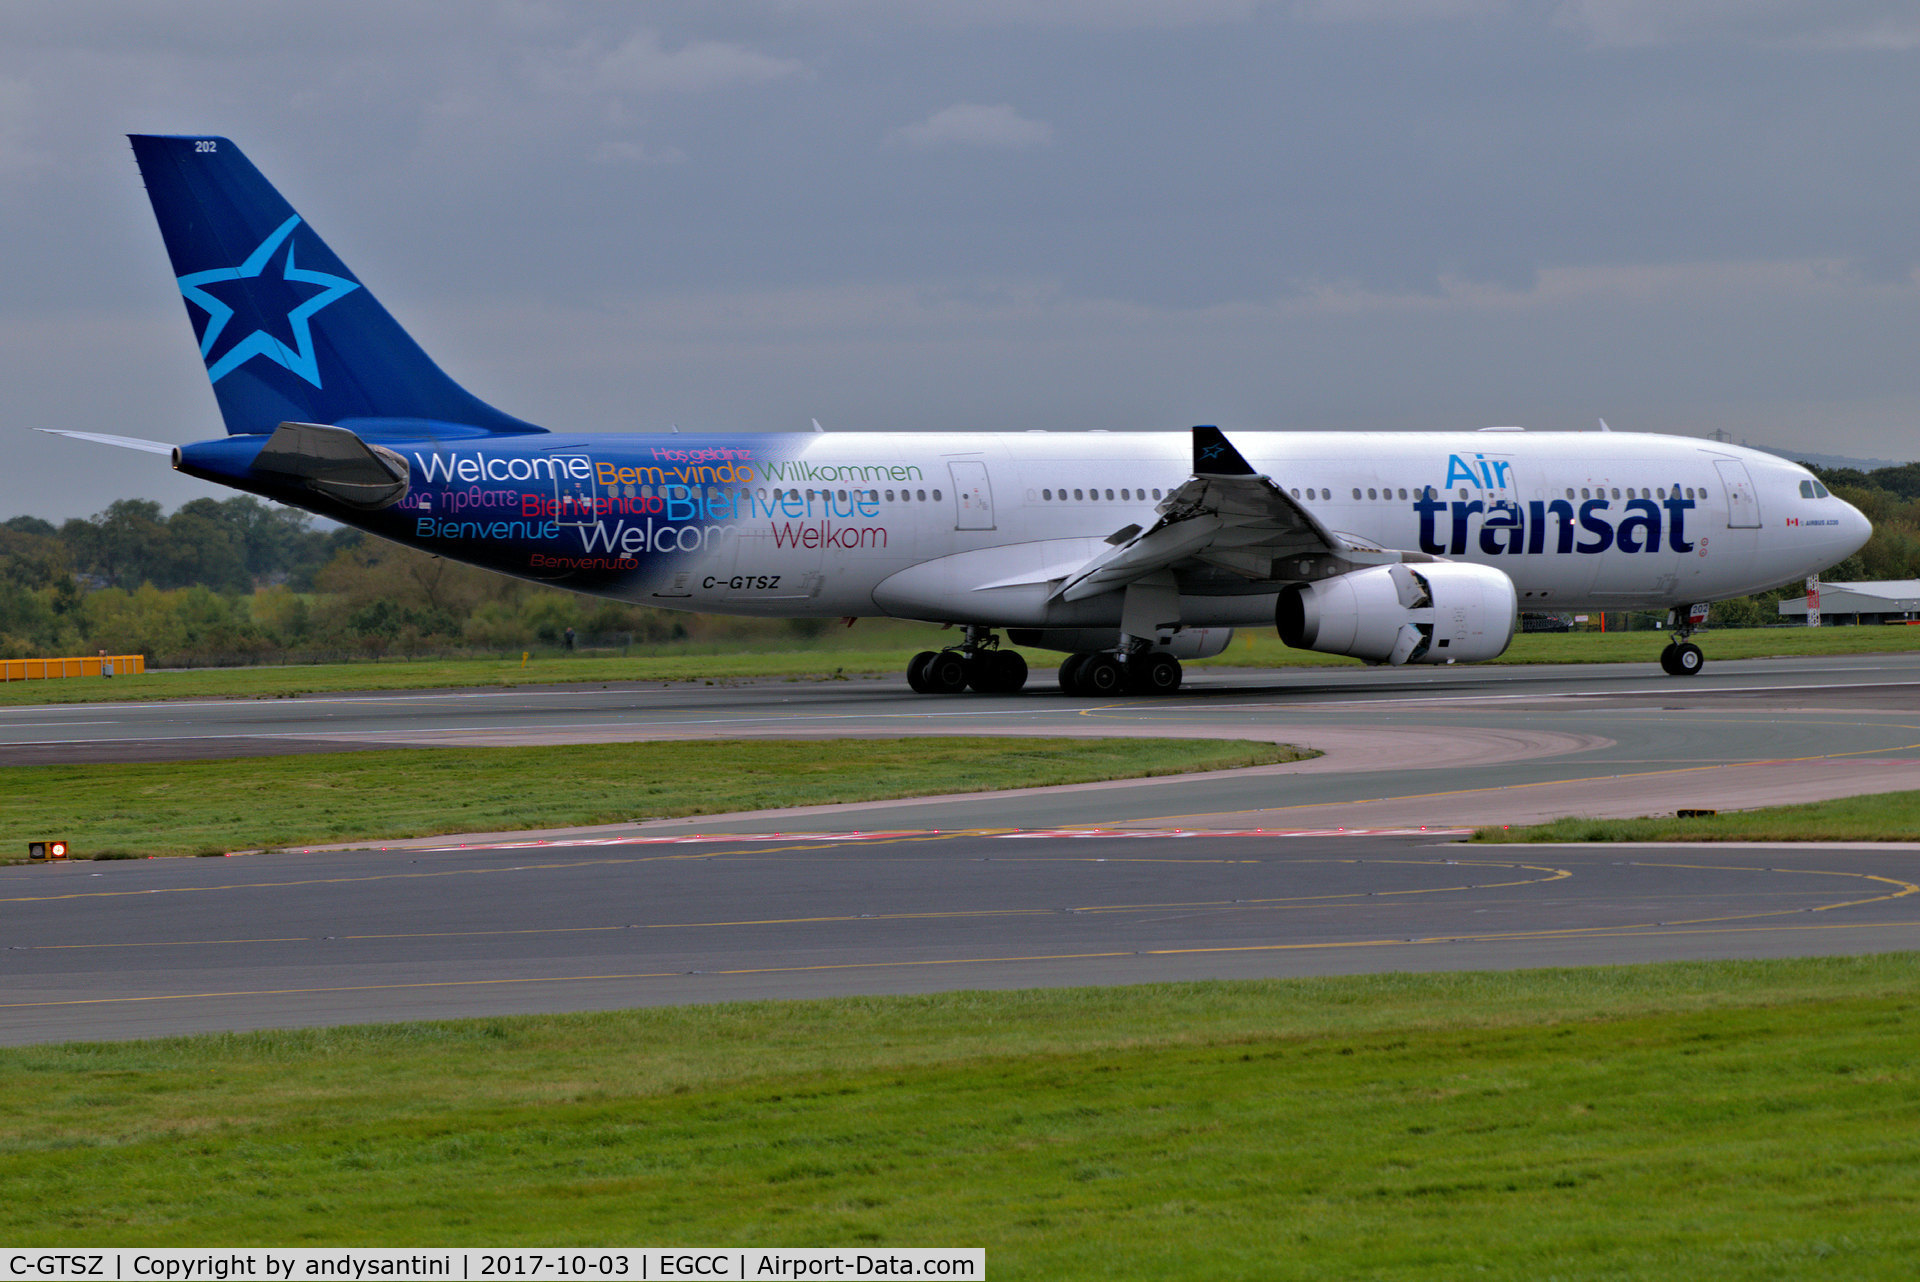 C-GTSZ, 2008 Airbus A330-243 C/N 971, just landed on runway [23R]